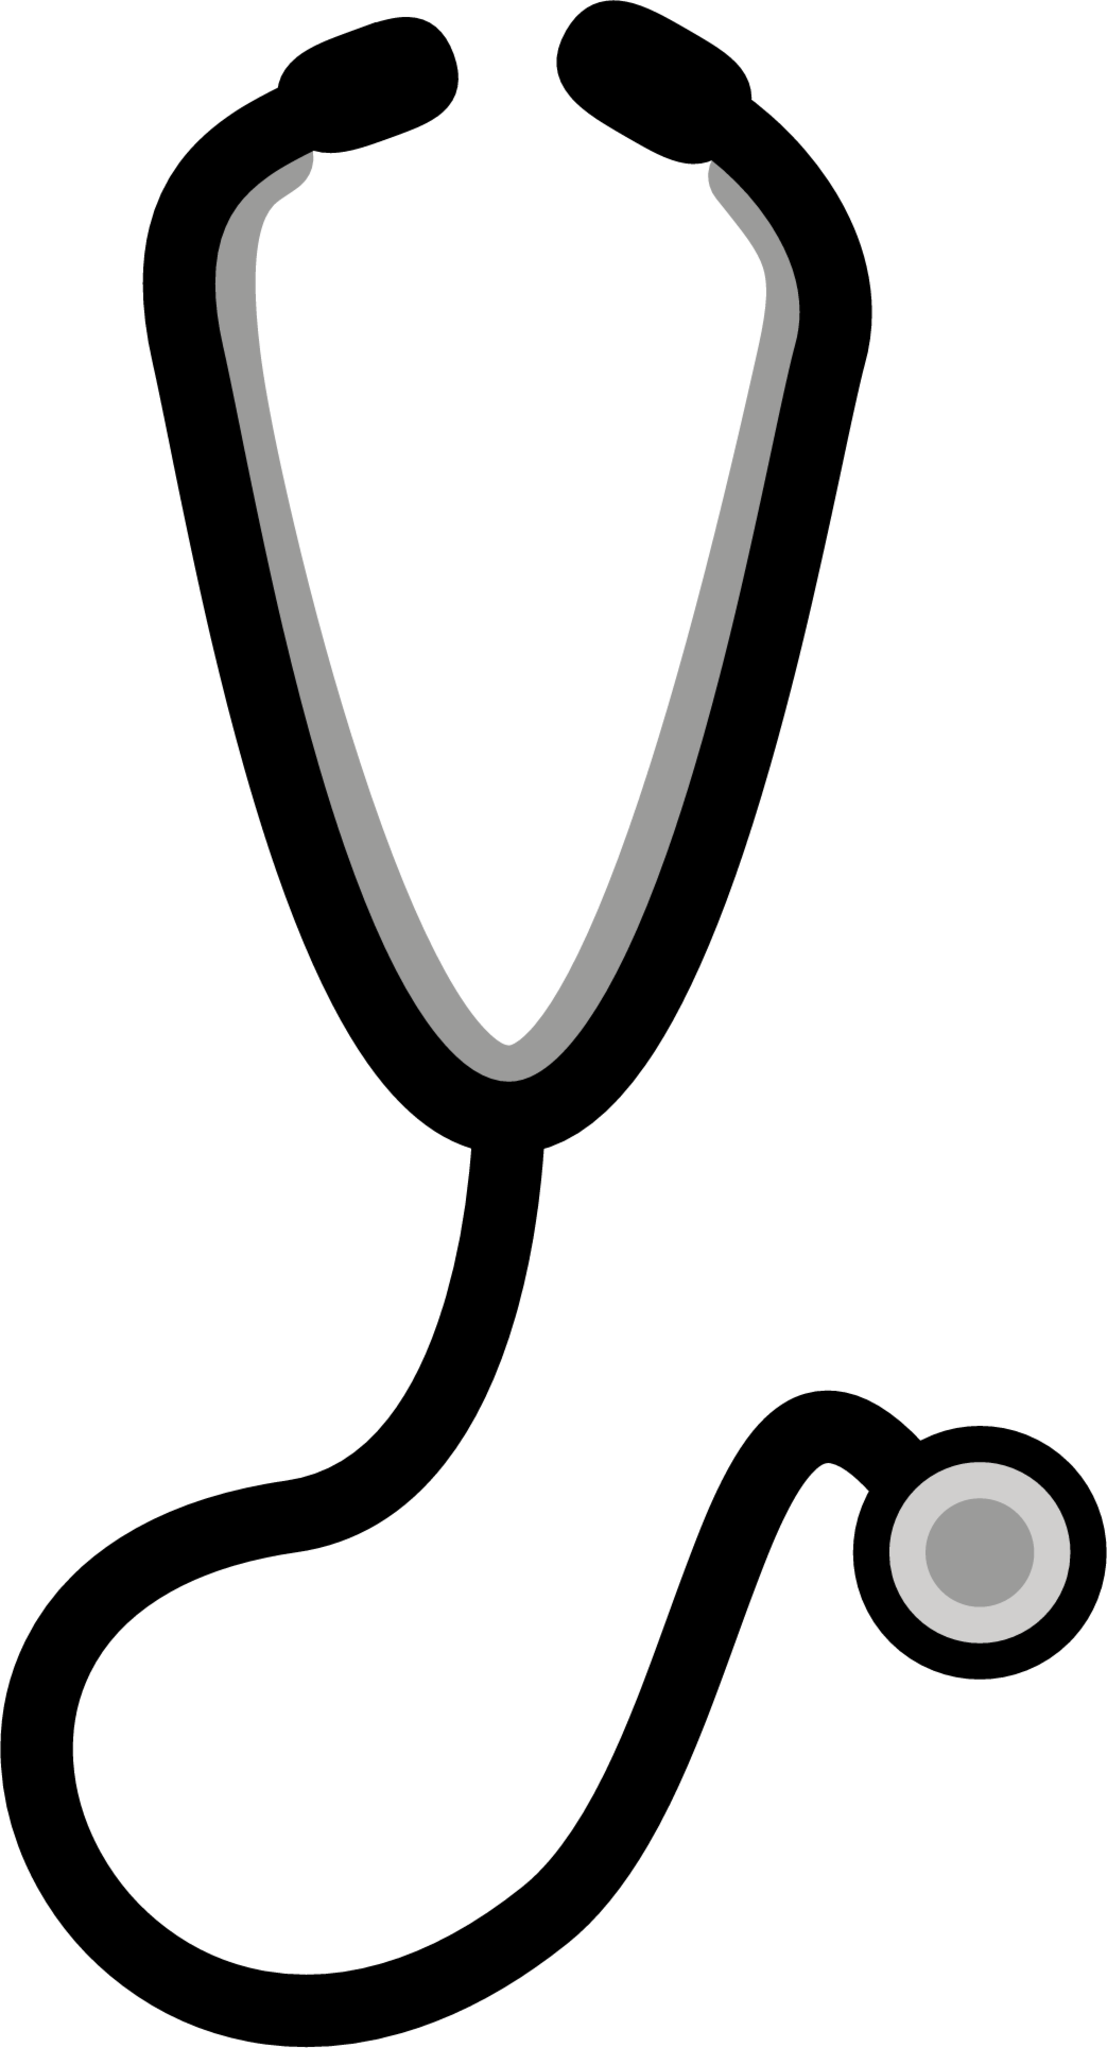 stethoscope emoji